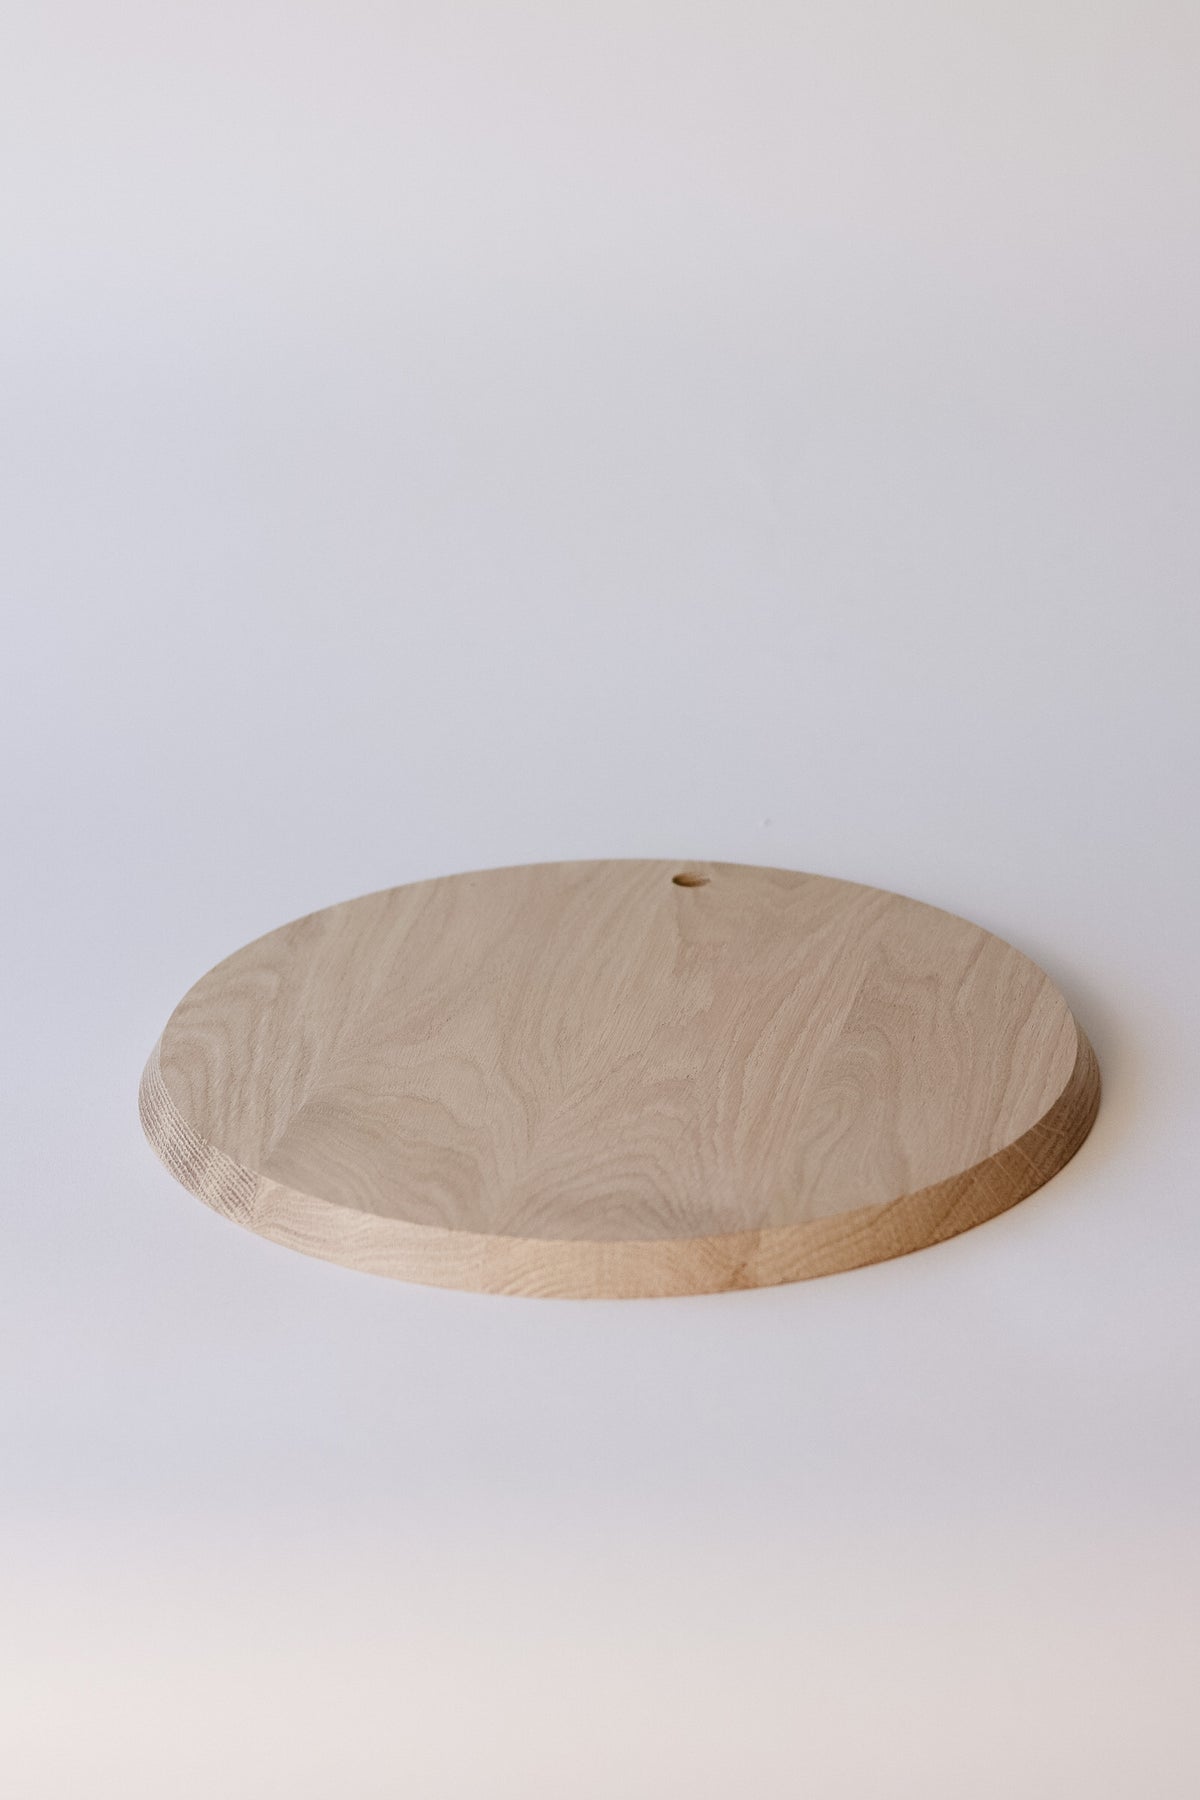 Oak Cutting Board - Round